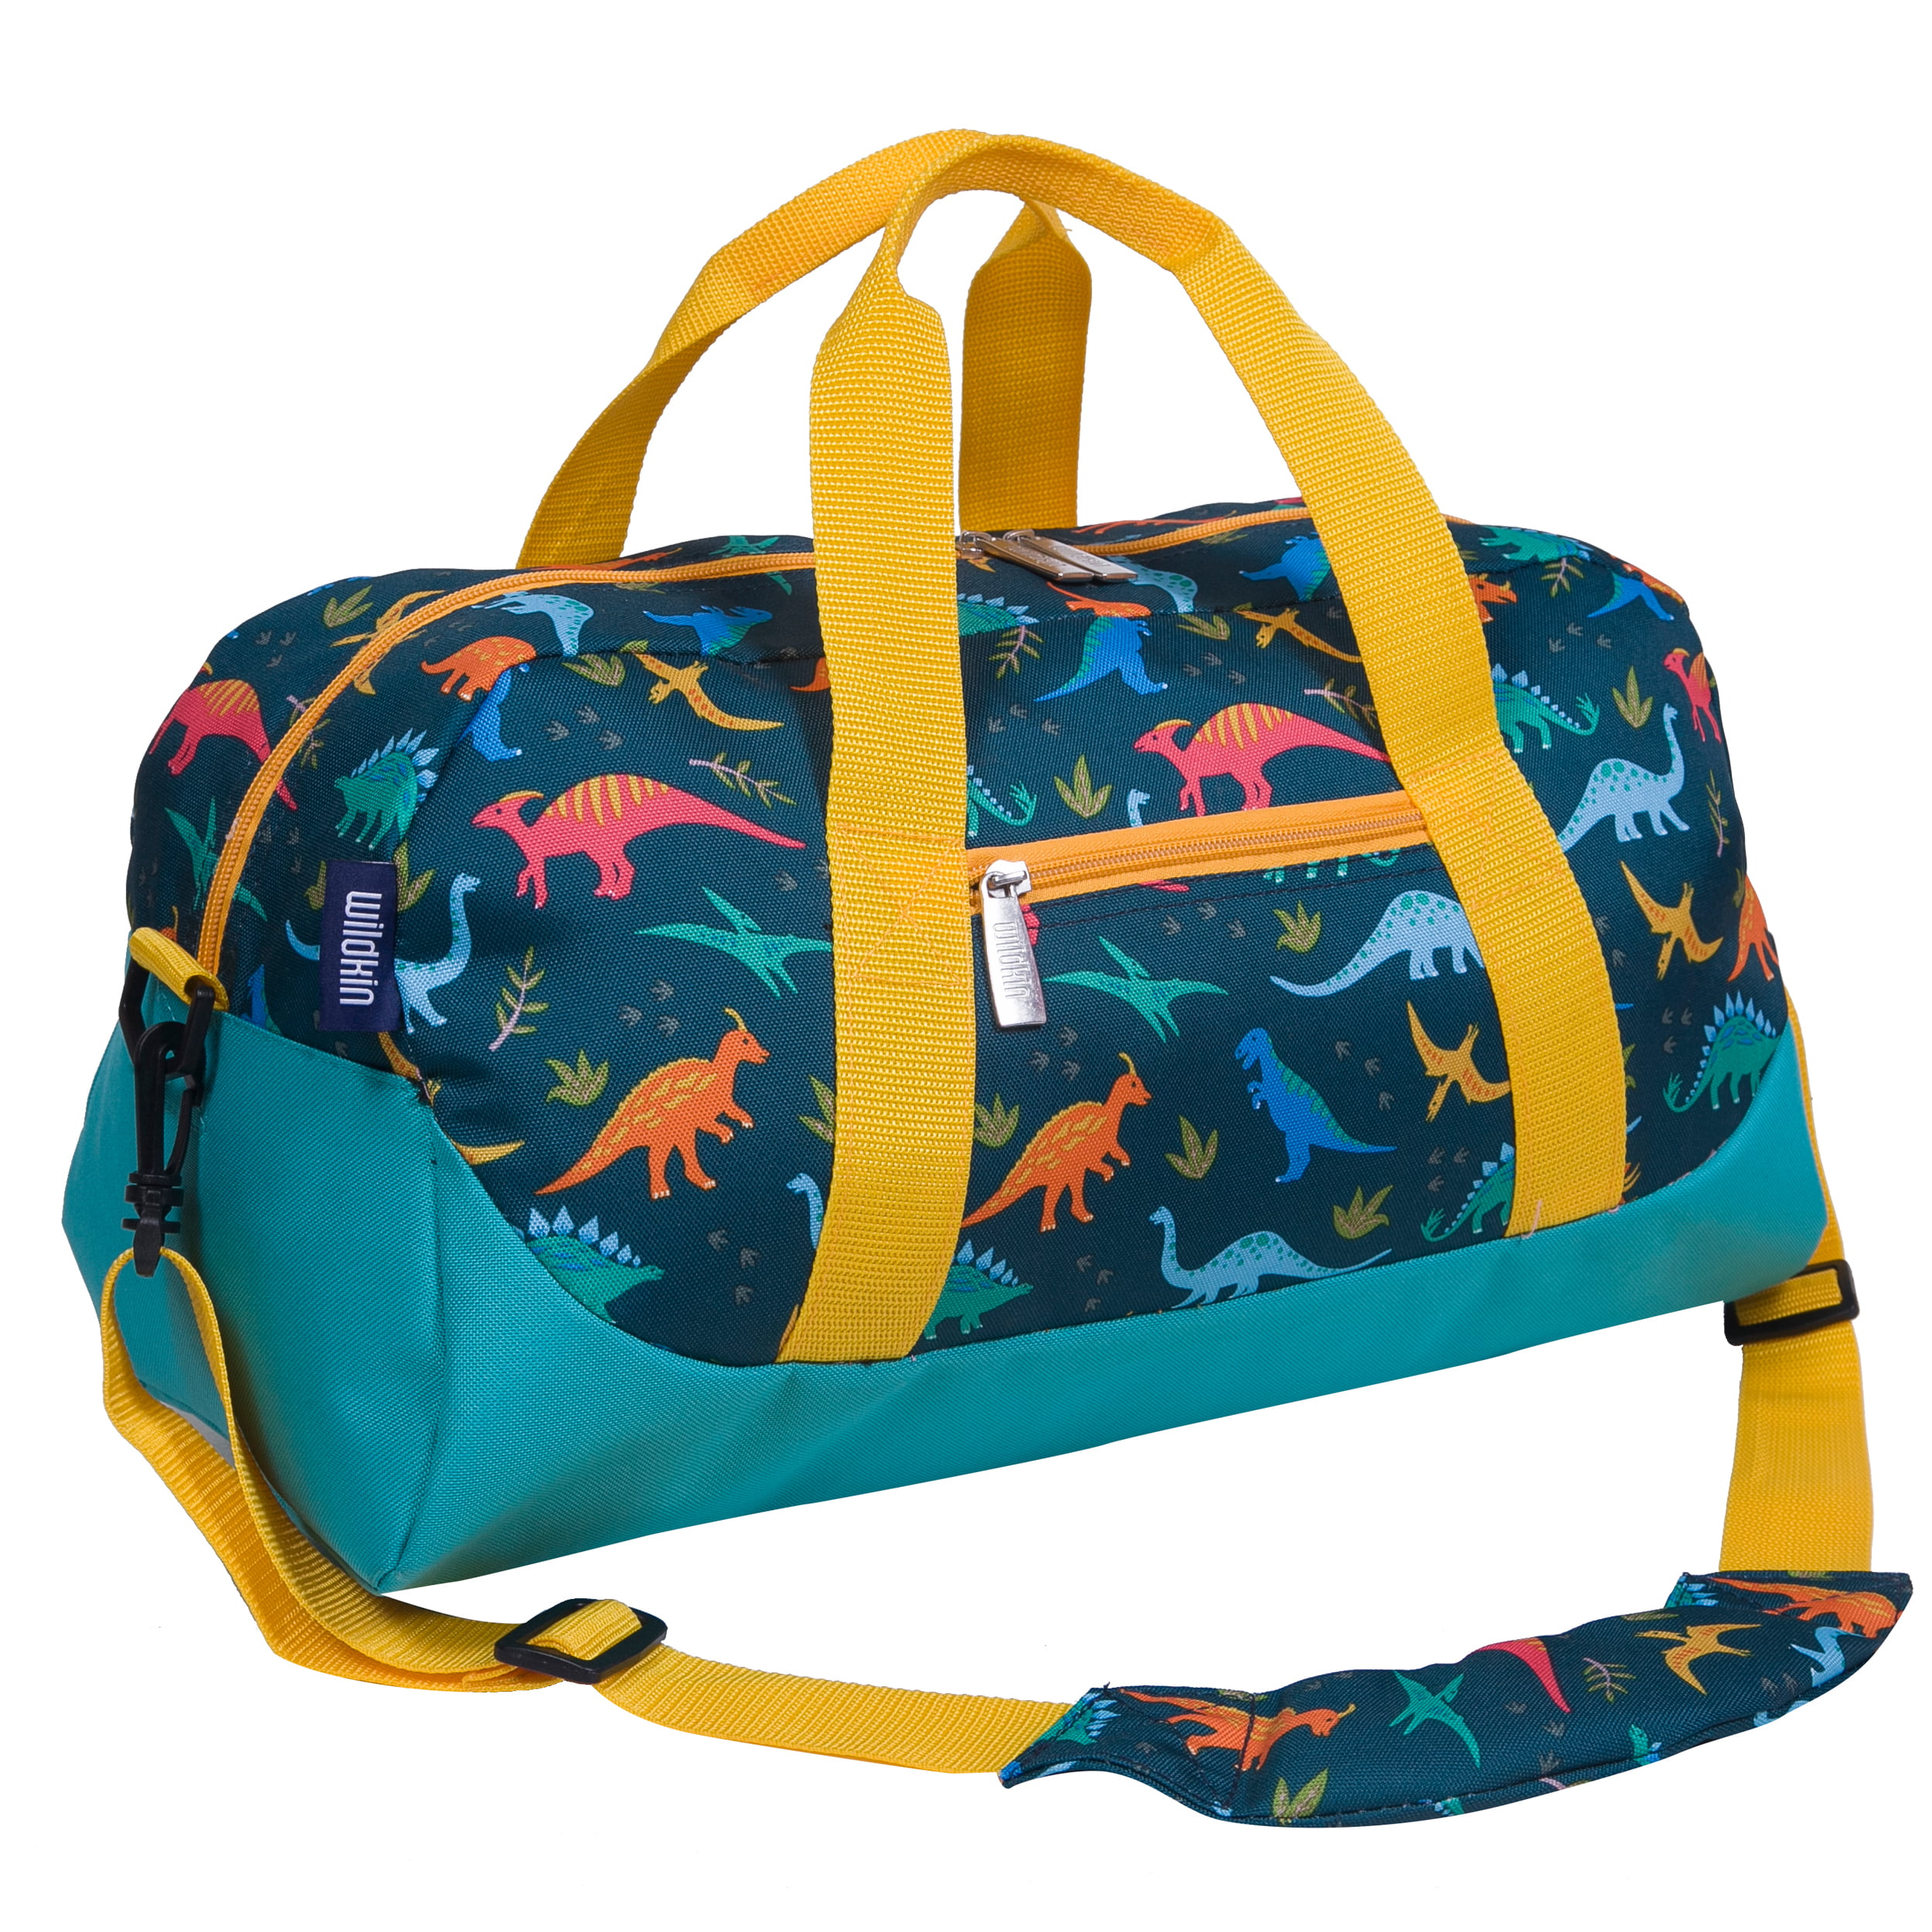 Travel Duffels Cartoon Dinosaur Duffle Bag Luggage Sports Gym for Women & Men 